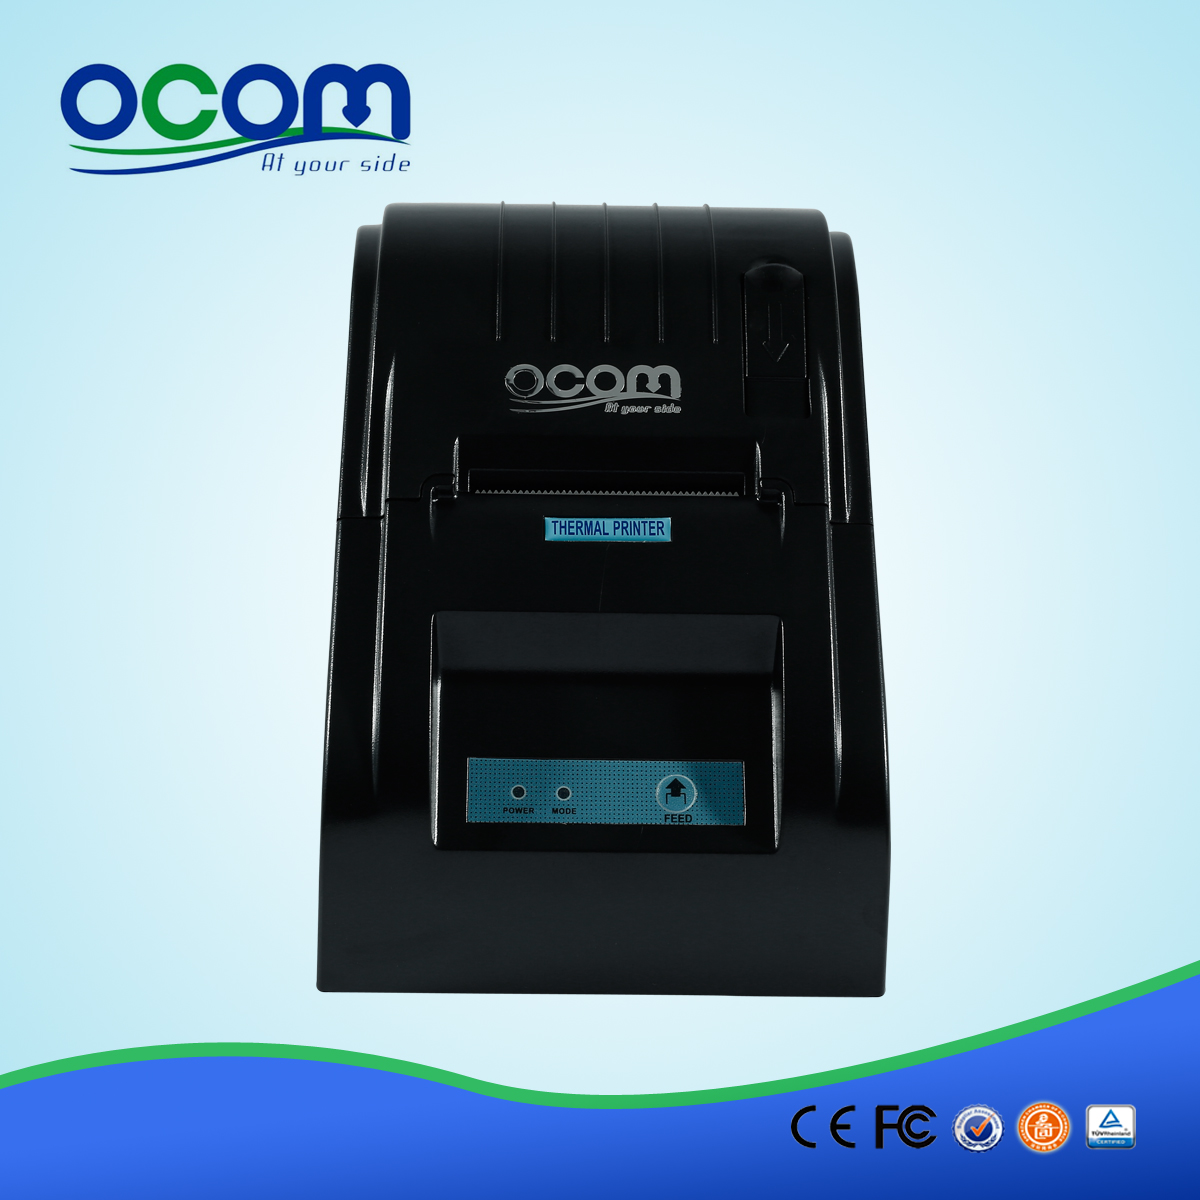 OCPP-585 58мм пос термический rp58 принтер с высоким качеством